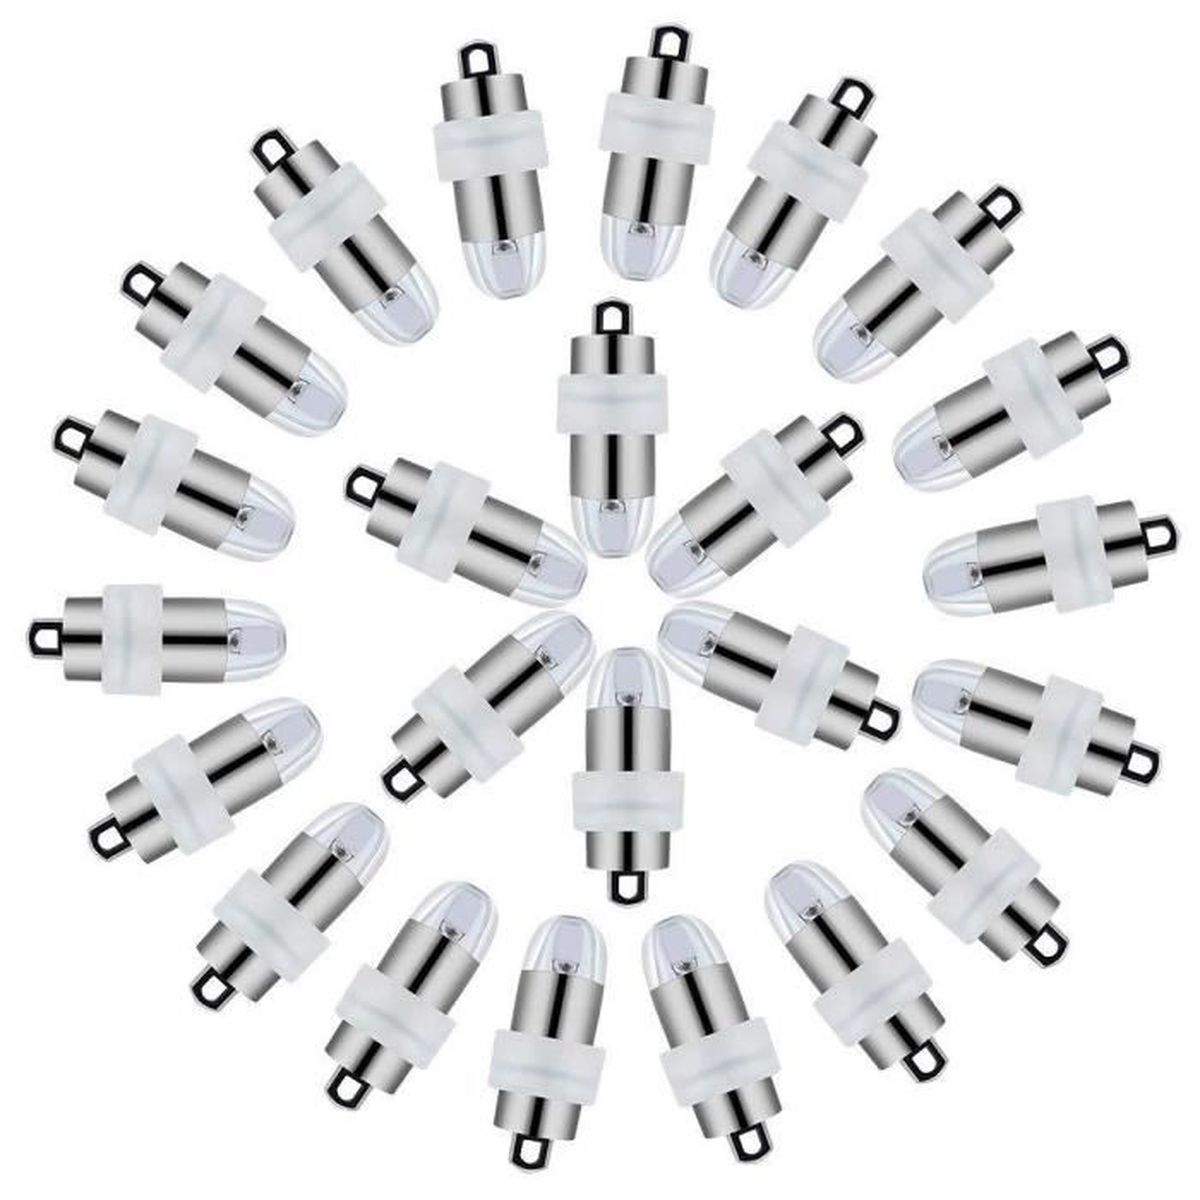 Yizhet 30PCS LED Ballons Lampes Lumineuses Blanc Froid pour Lanterne Papier Décoration Mariage florale,Blanc Froid 